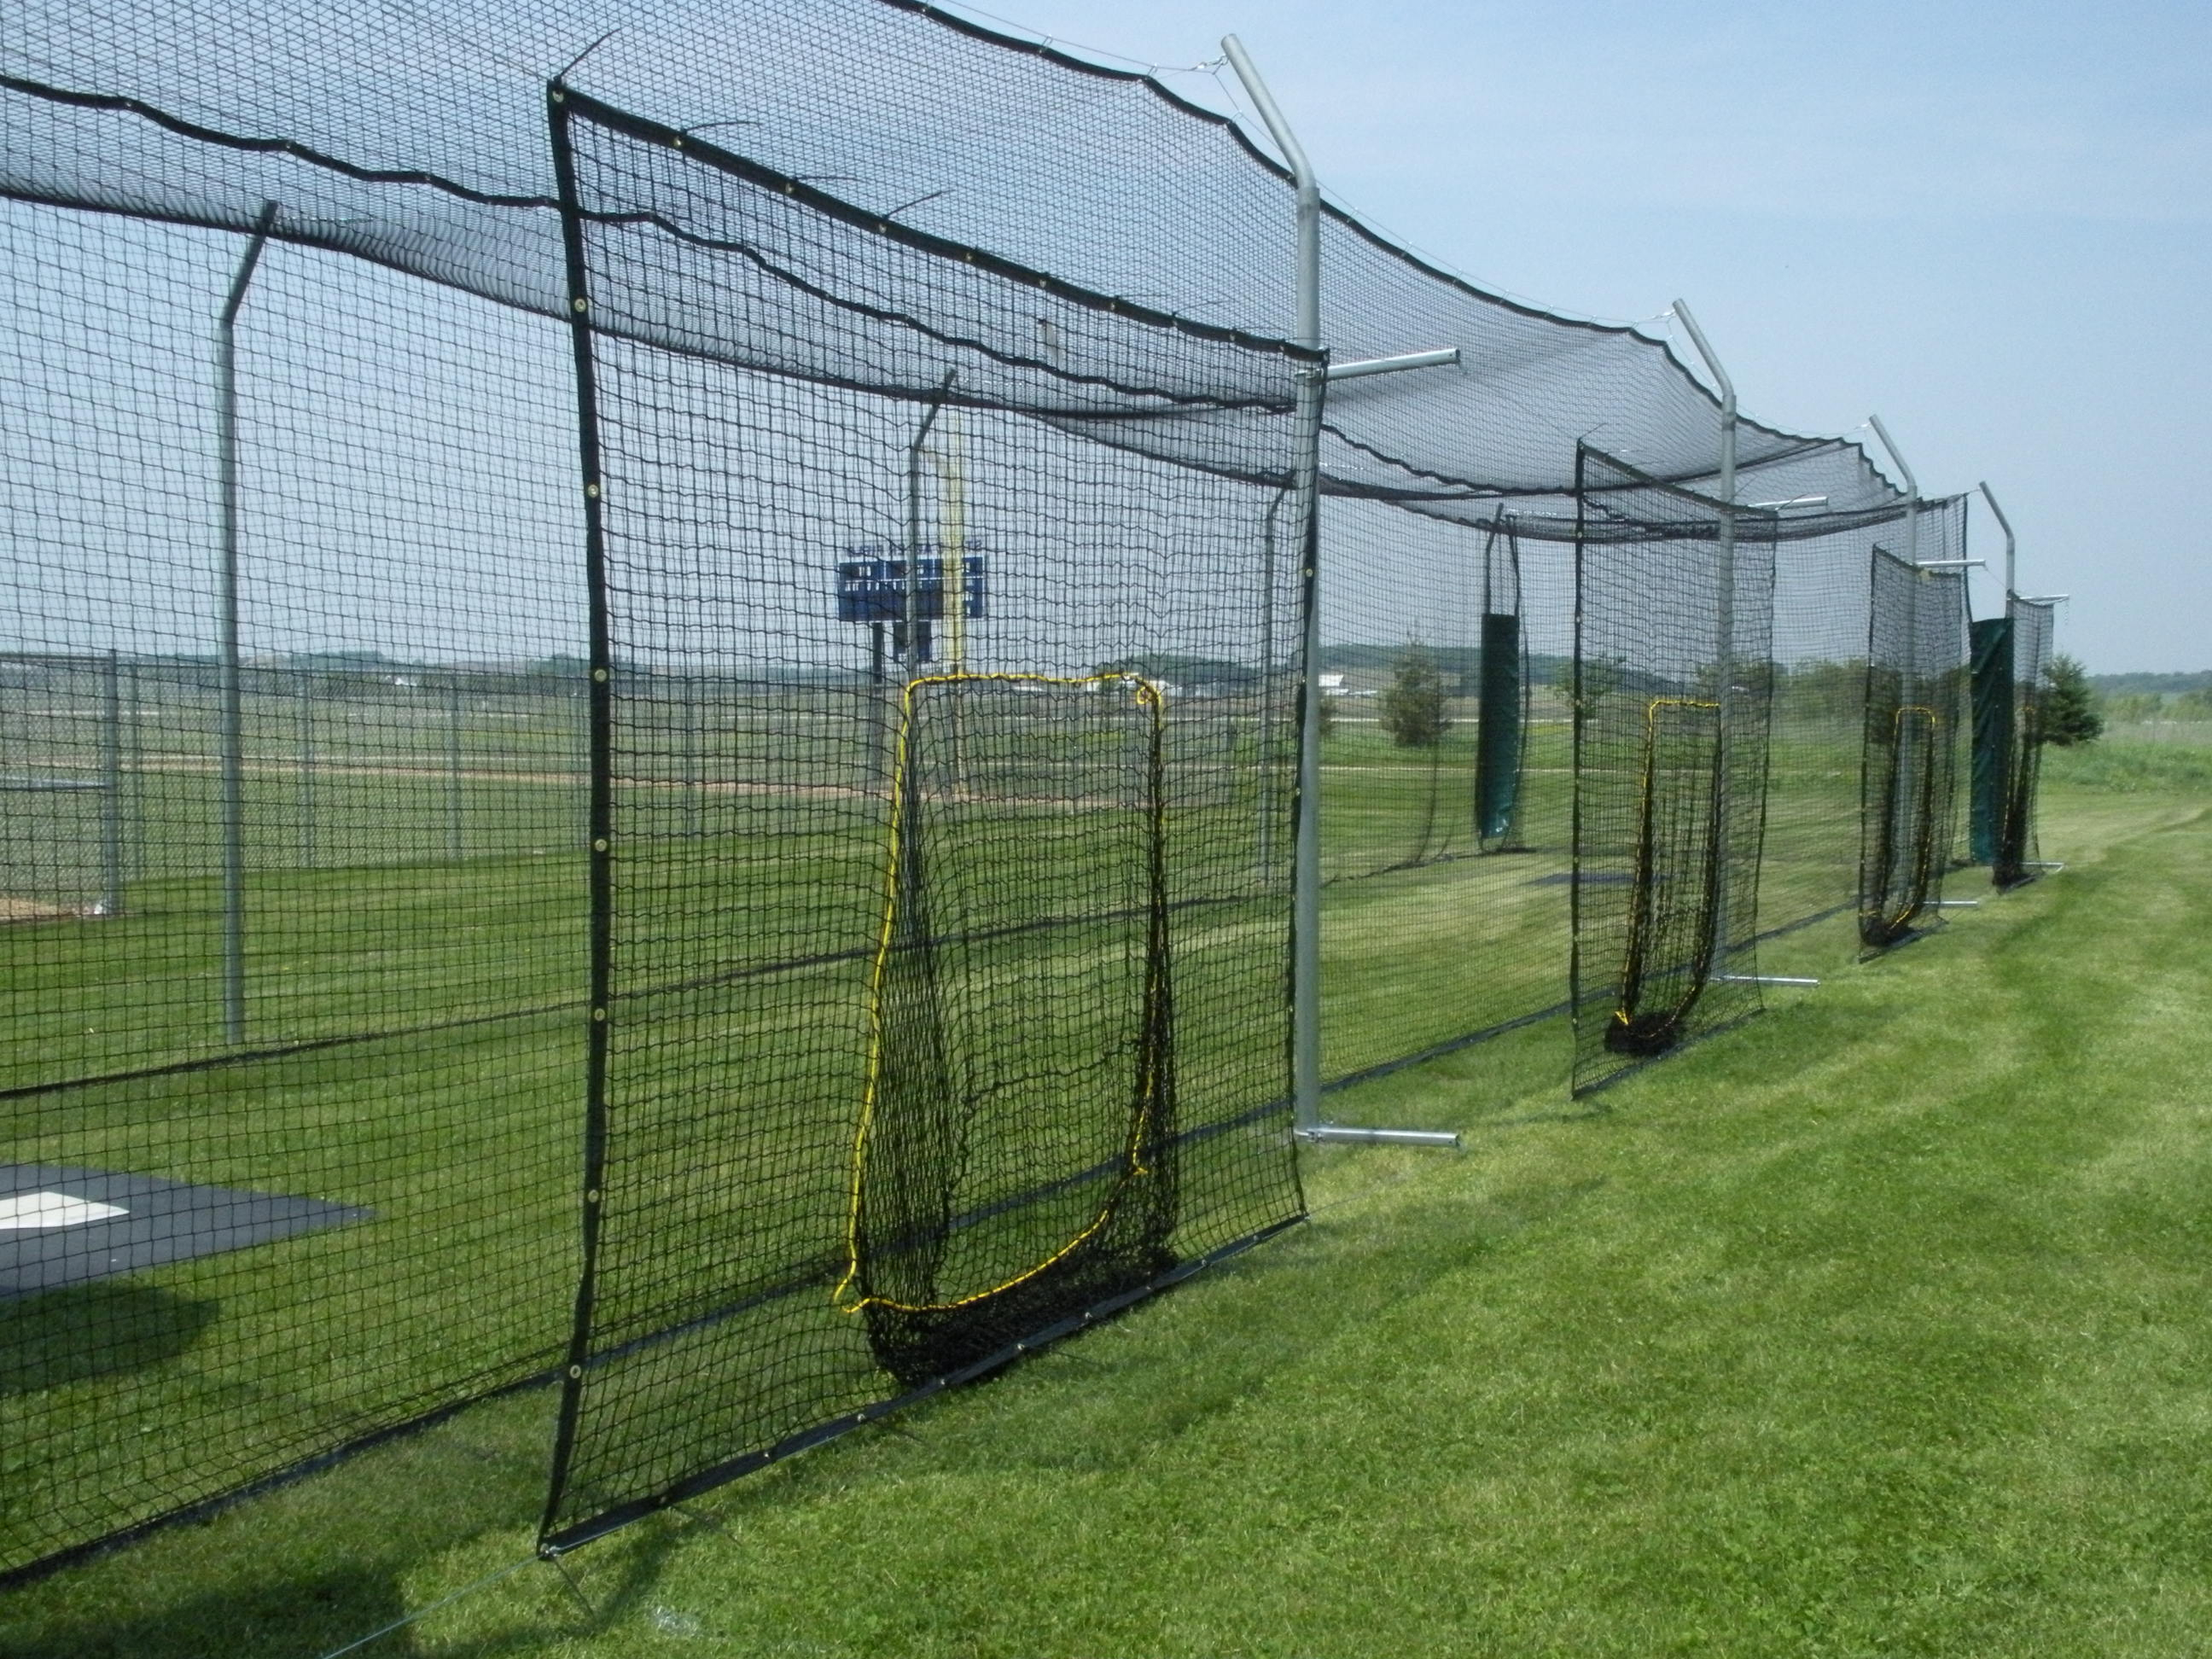 25.homemade batting cage frame homemade ftempo via SIMPHOME.COM